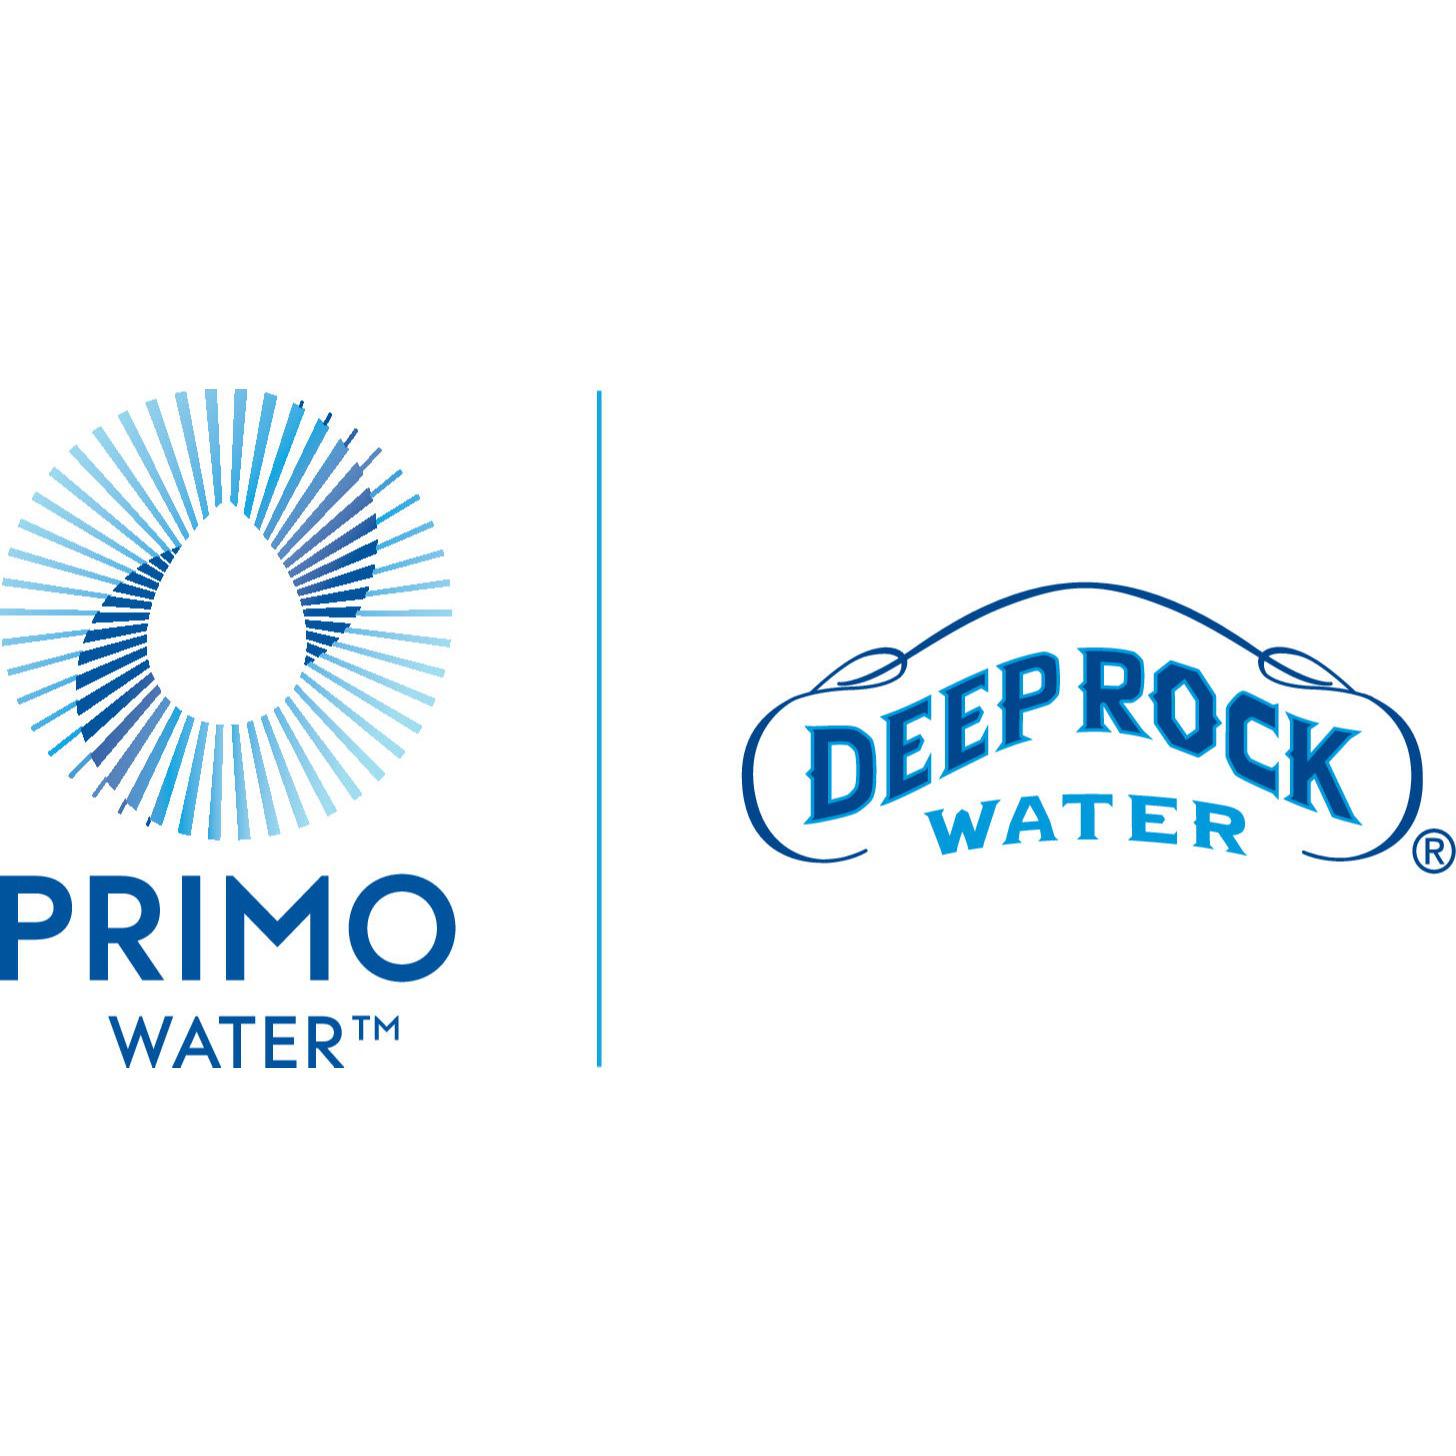 Deep Rock Water Delivery Service 3010 Colorado Springs (800)492-8377